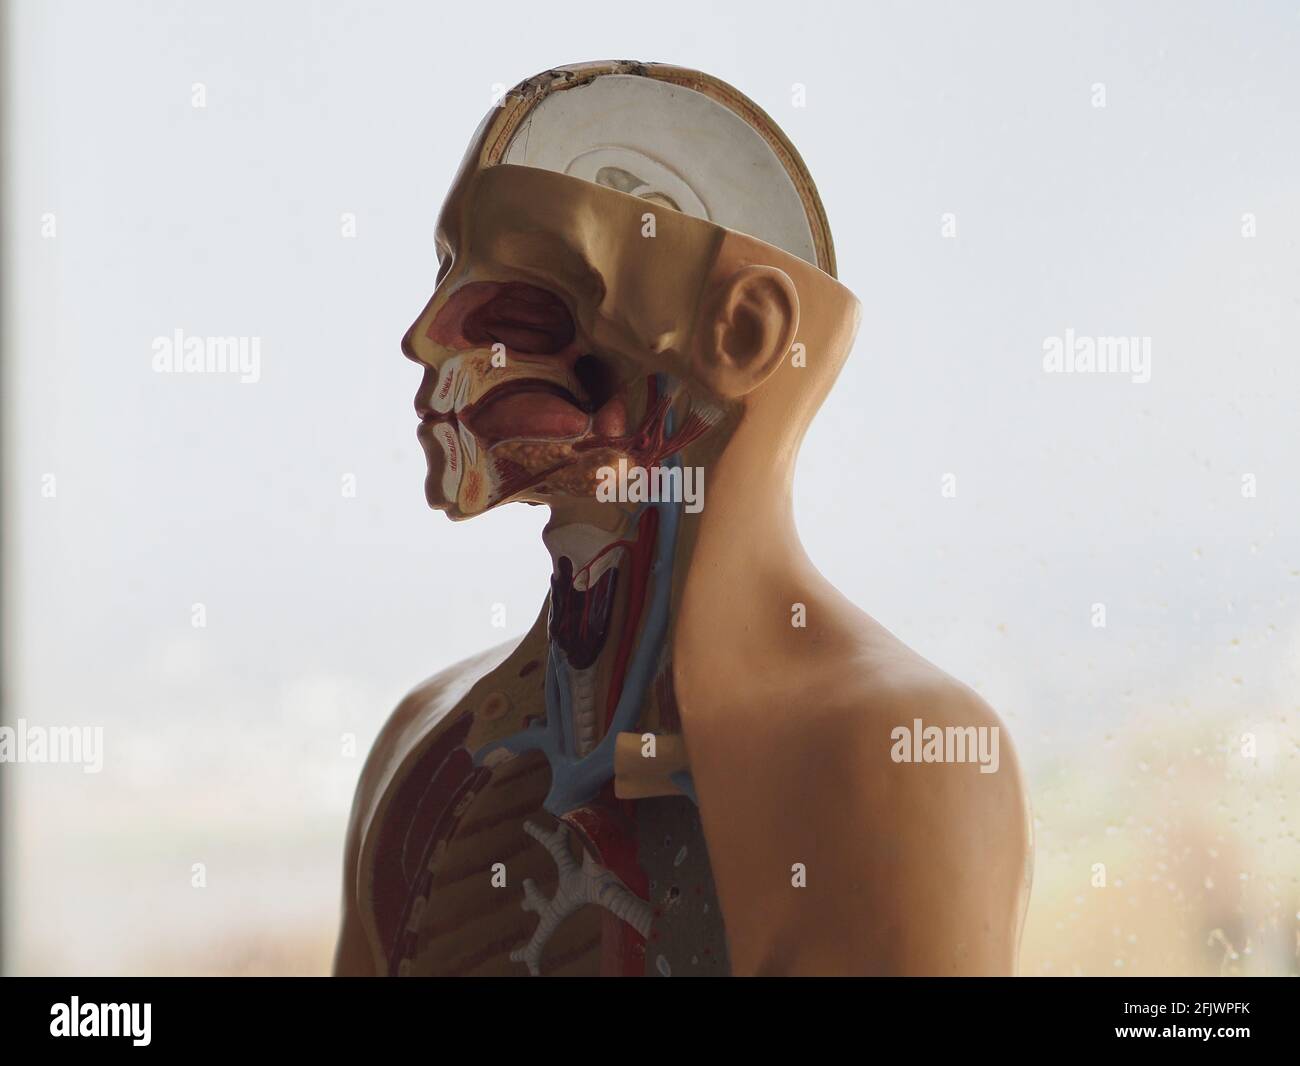 Modello educativo tridimensionale della struttura interna del corpo umano. Anatomia. Foto Stock